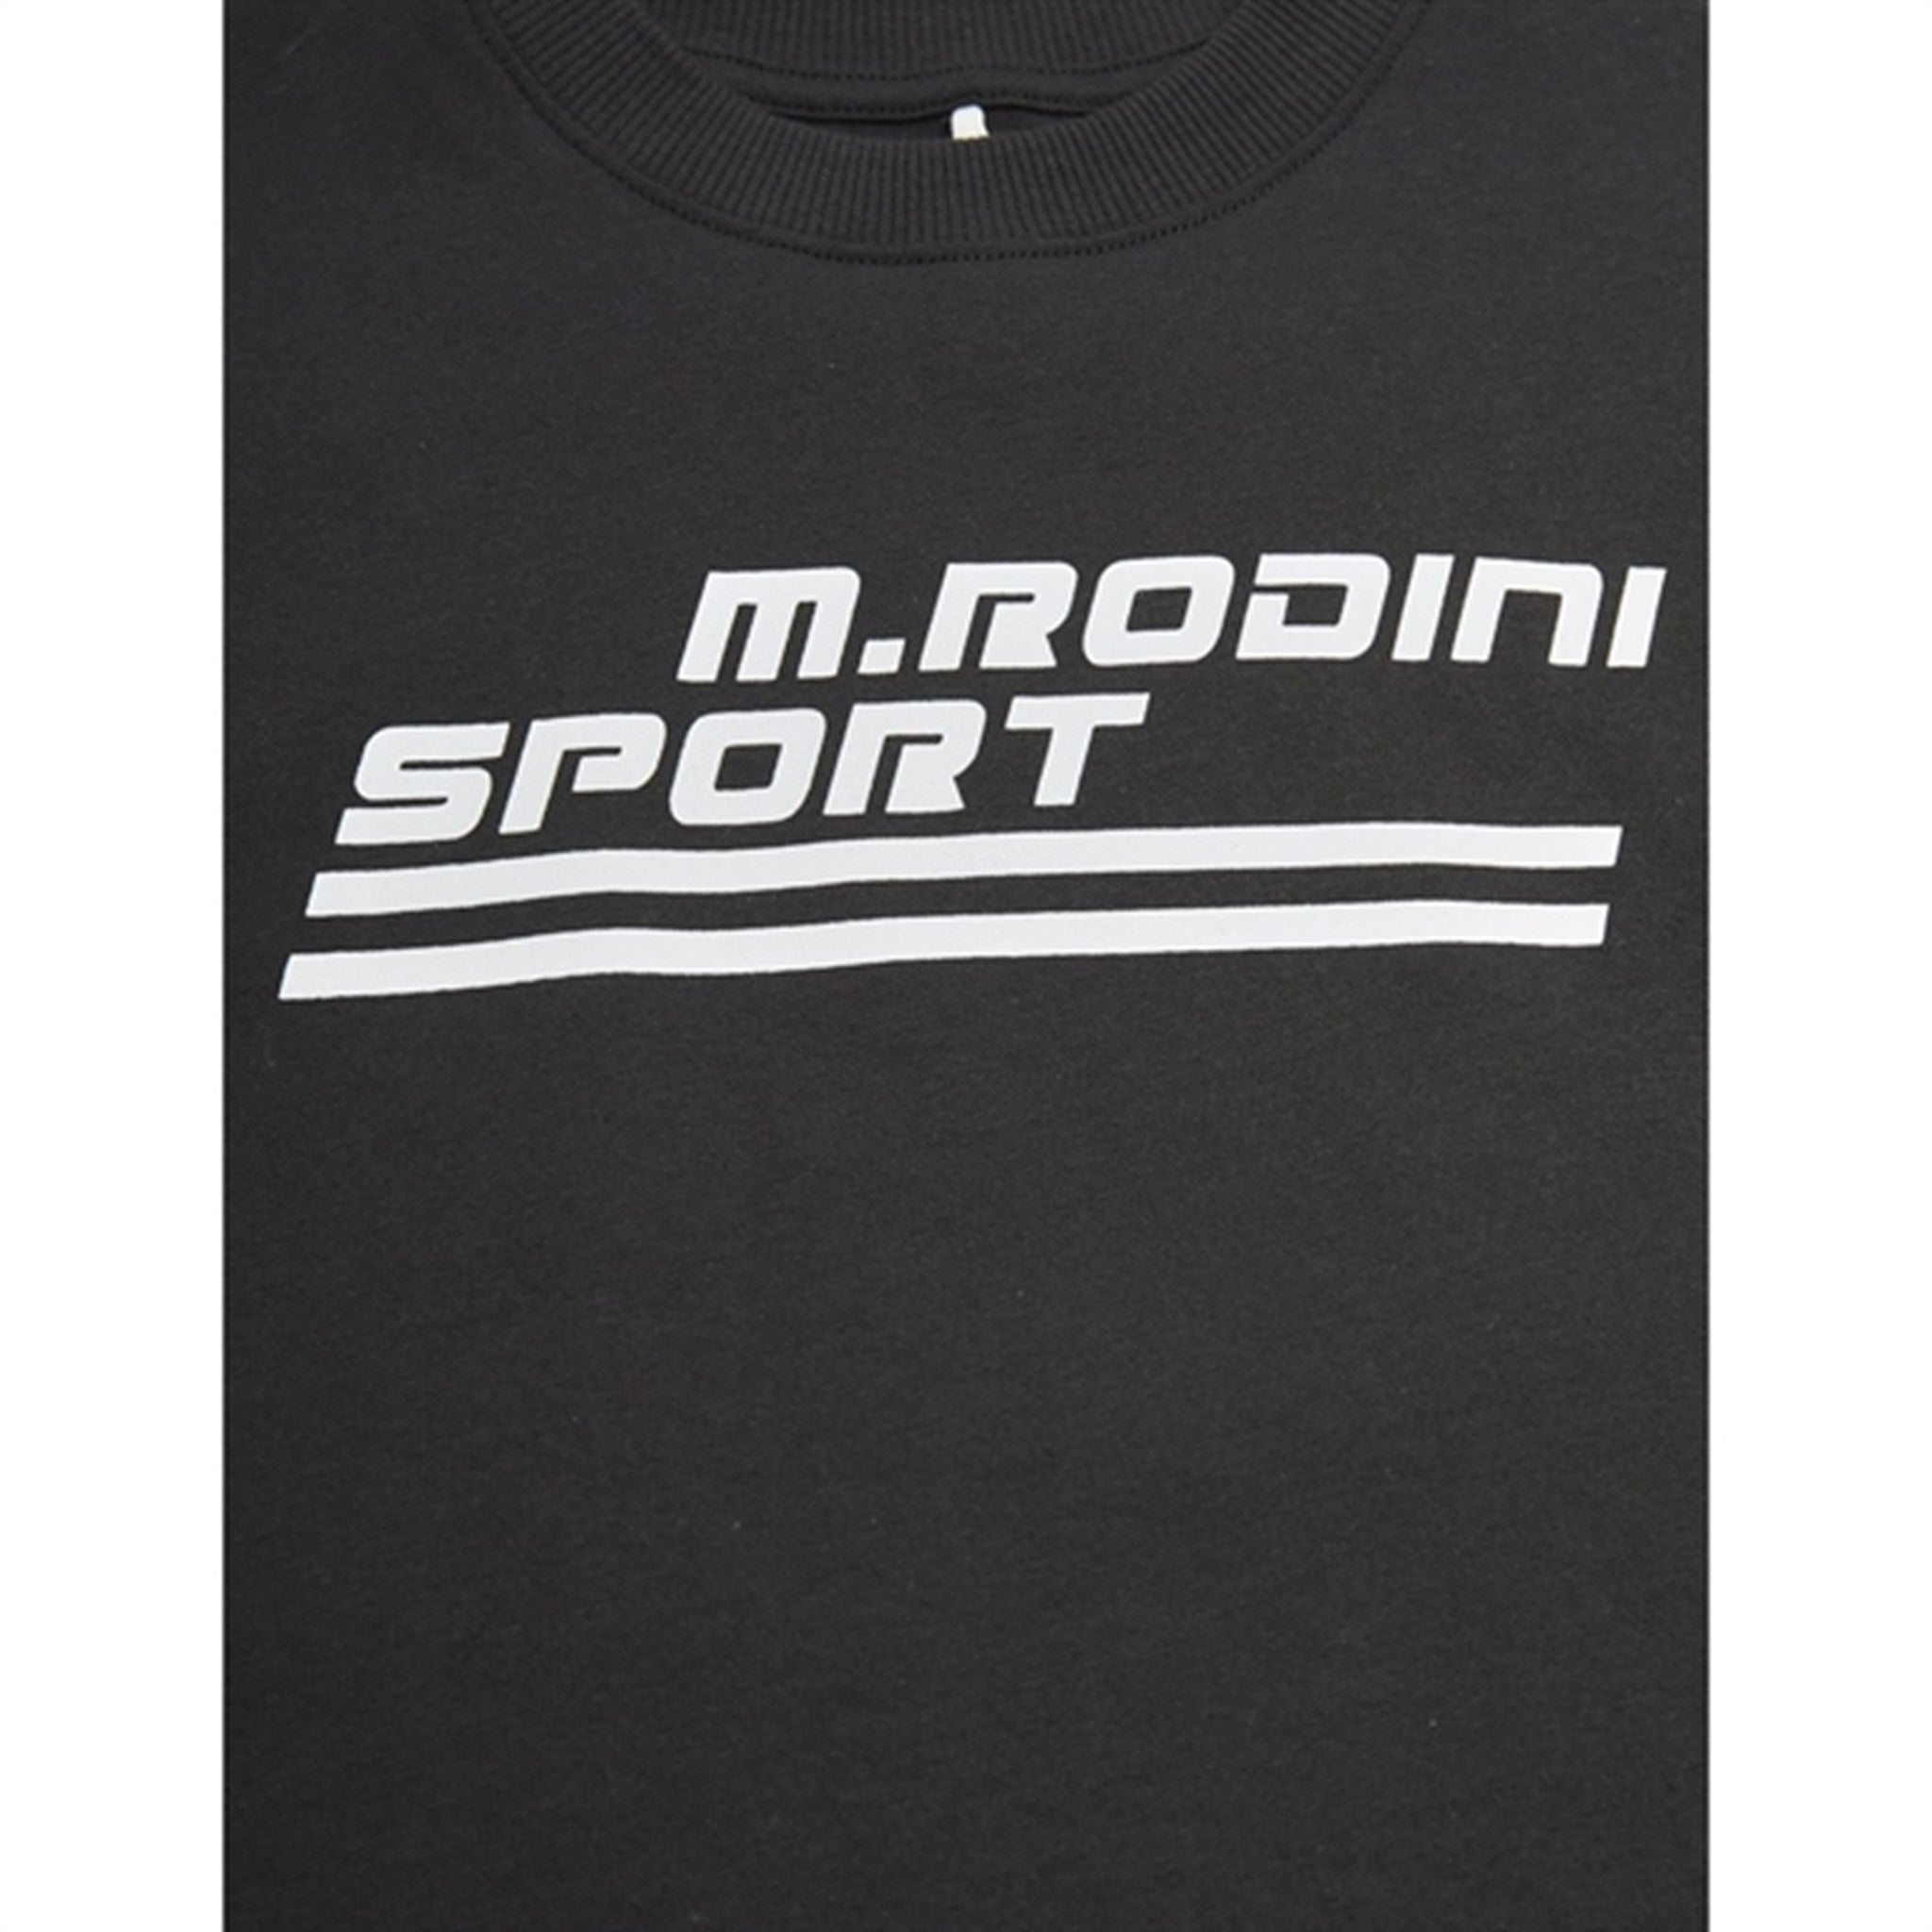 Mini Rodini Black M Rodini Sport Sp T-shirt 2